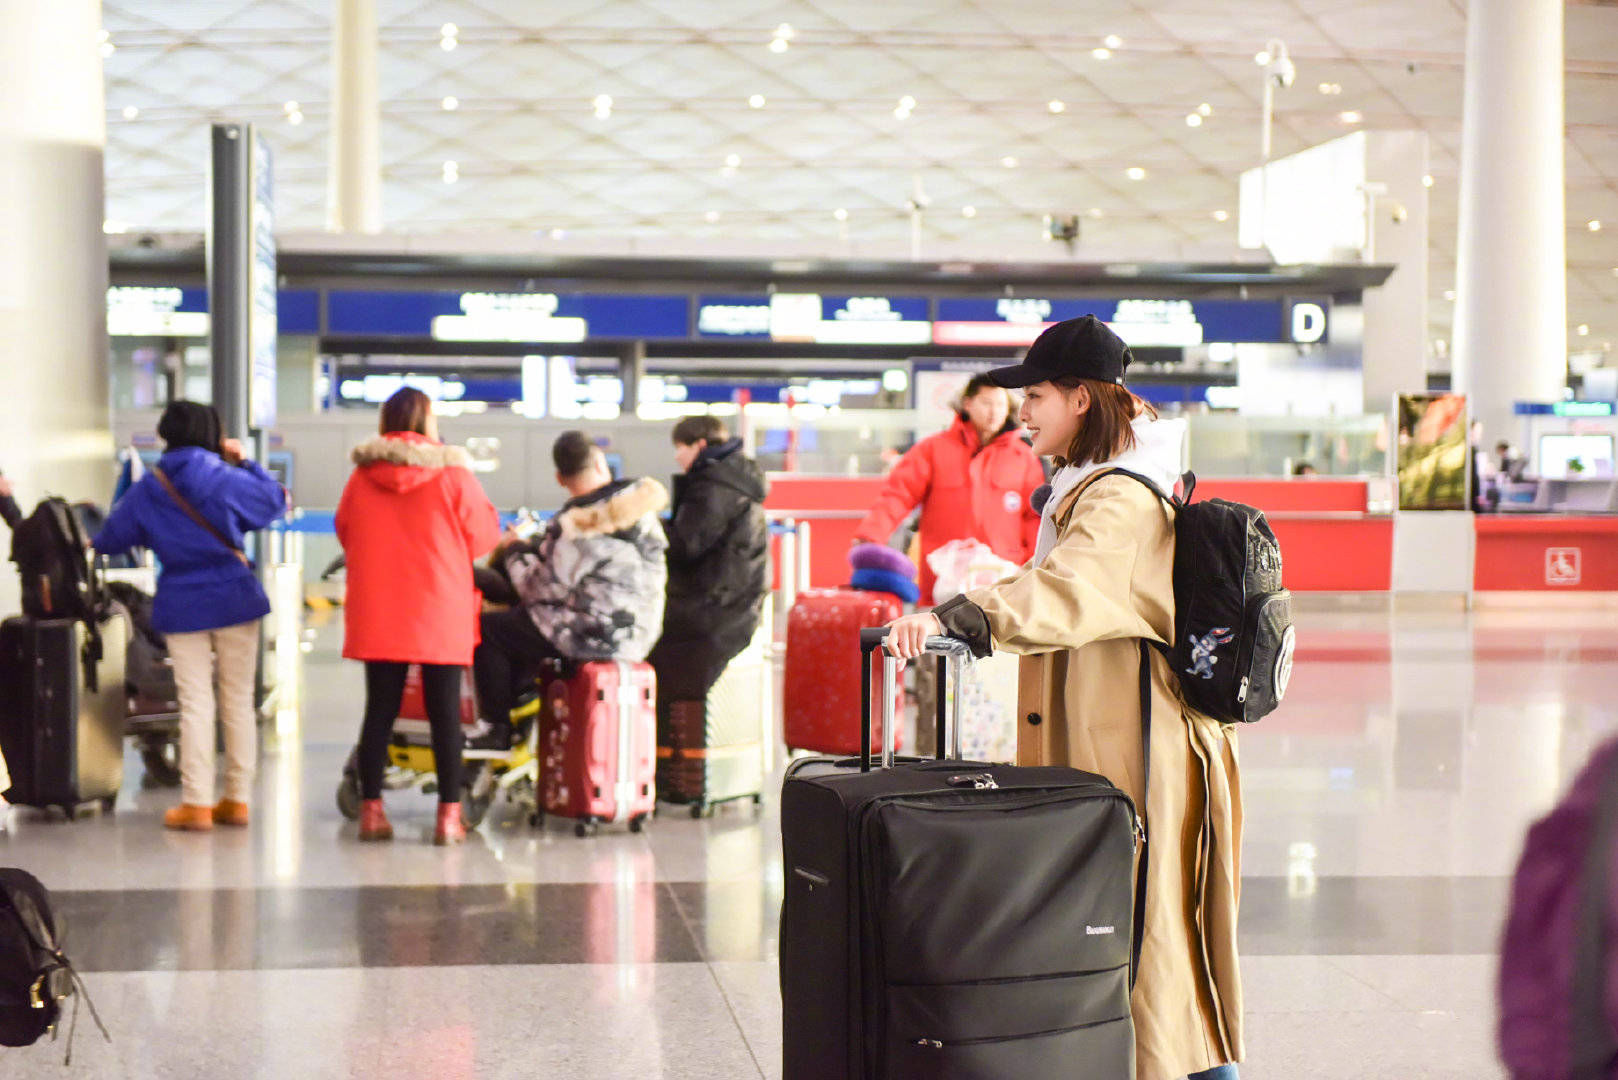 张嘉倪是妻子的浪漫旅行第二季嘉宾,现身机场